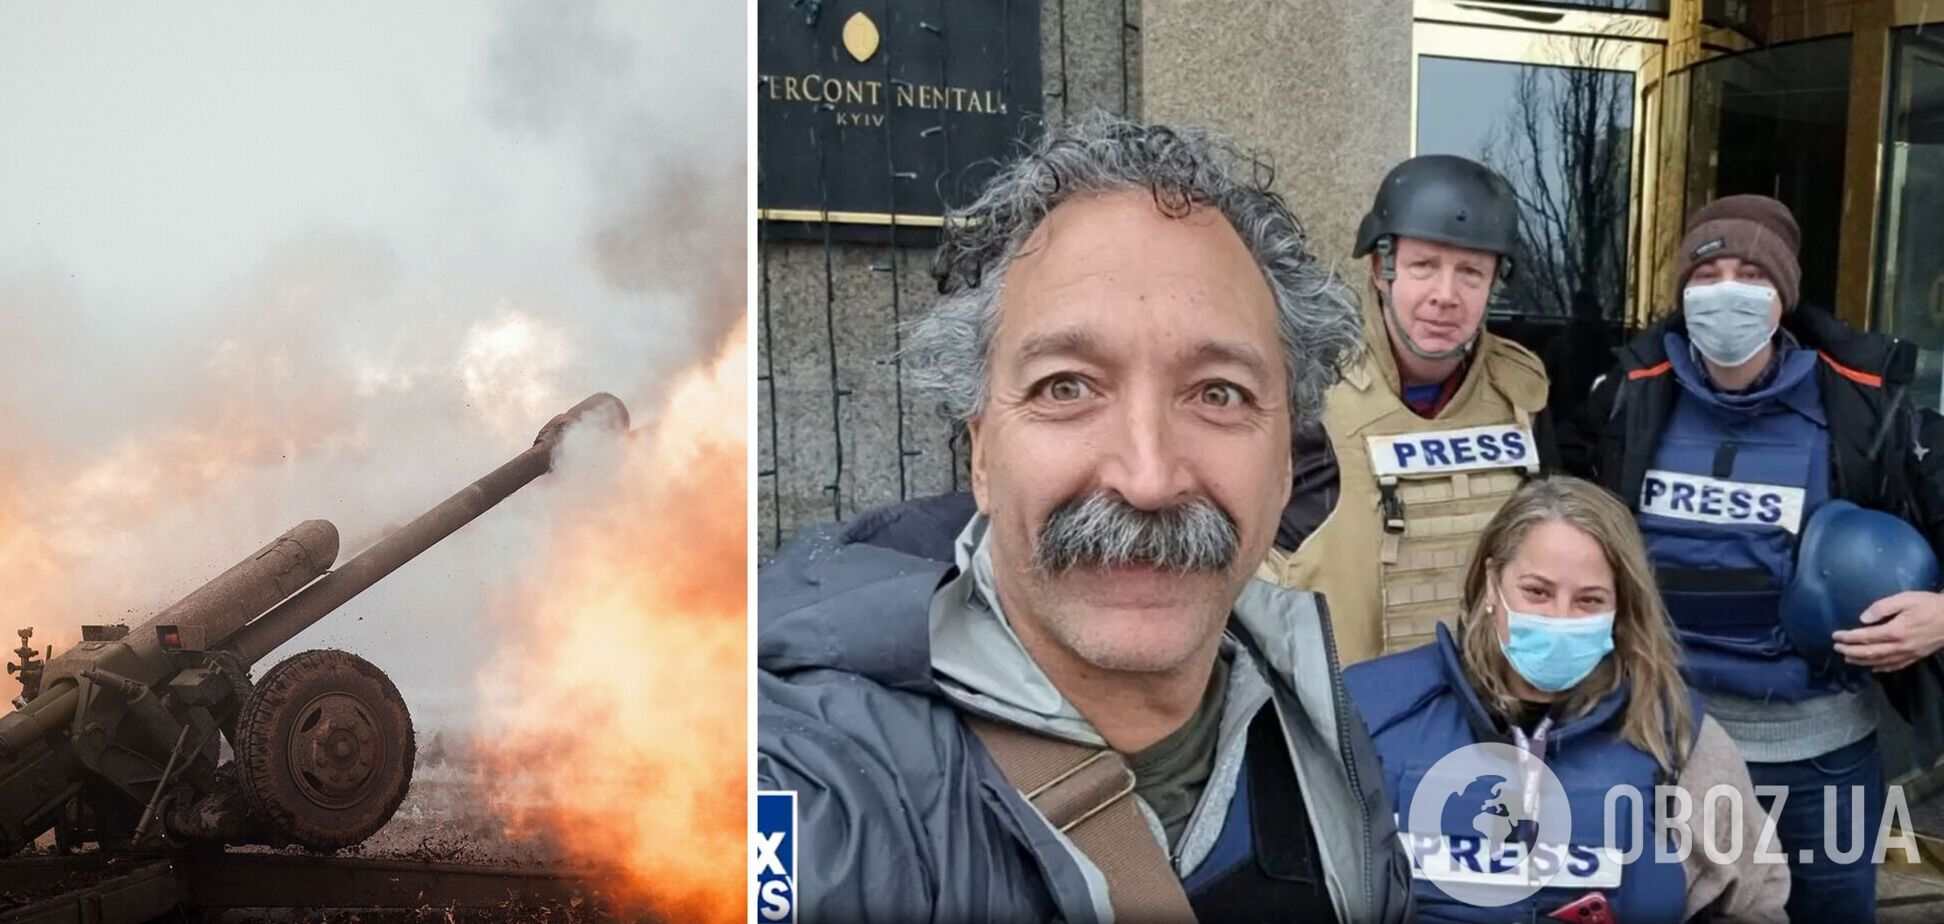 Оператор FoxNews и украинская журналистка погибли под обстрелом артиллерии РФ